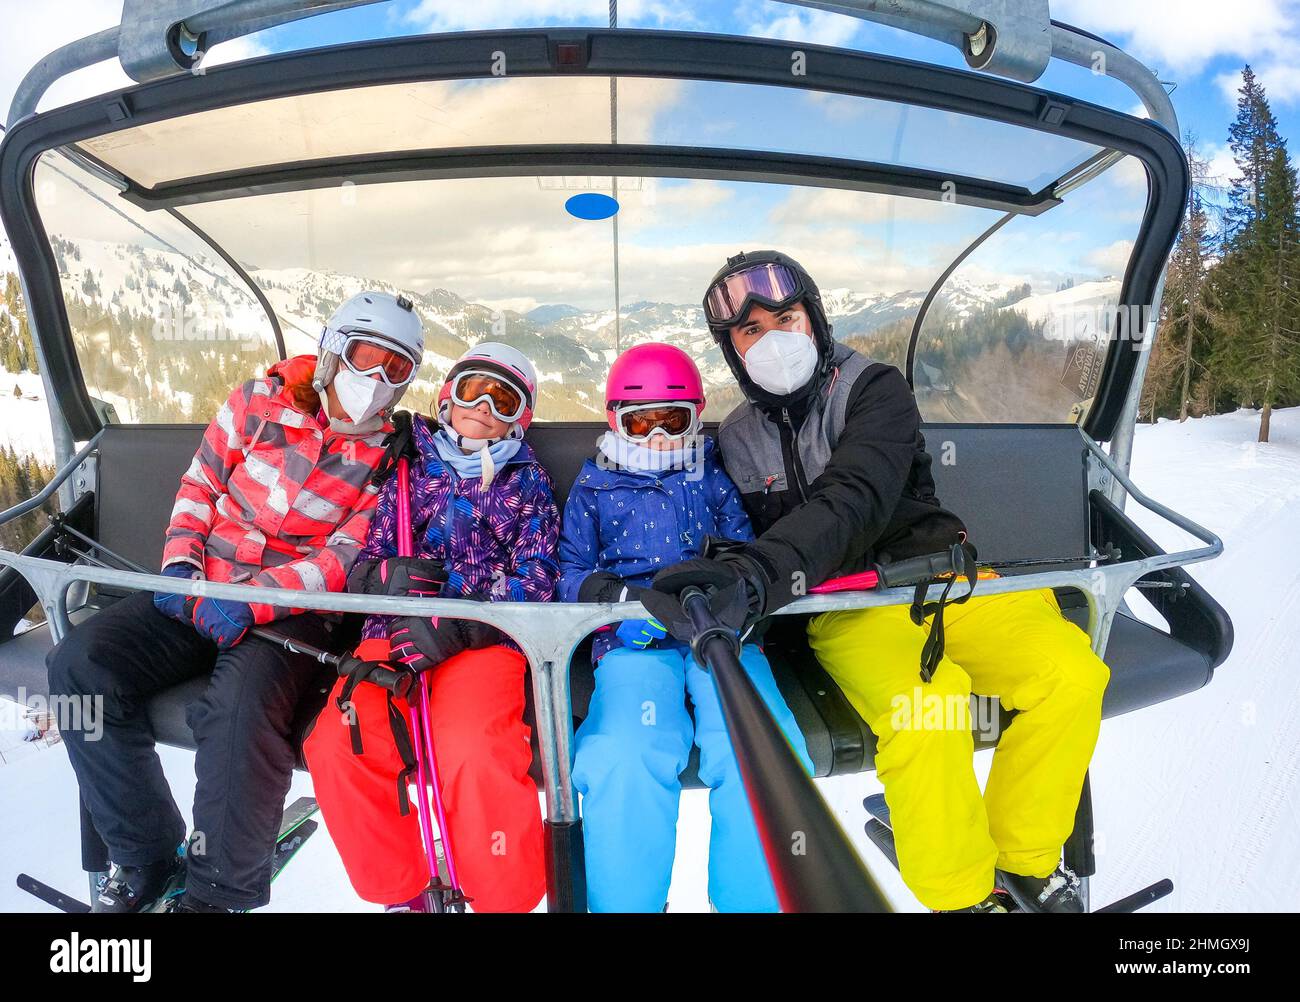 En famille, on peut faire du ski téléski en hiver. Vacances en famille en hiver, ski en train de prendre un selfie sur les remontées mécaniques avec une vue imprenable sur la montagne o Banque D'Images